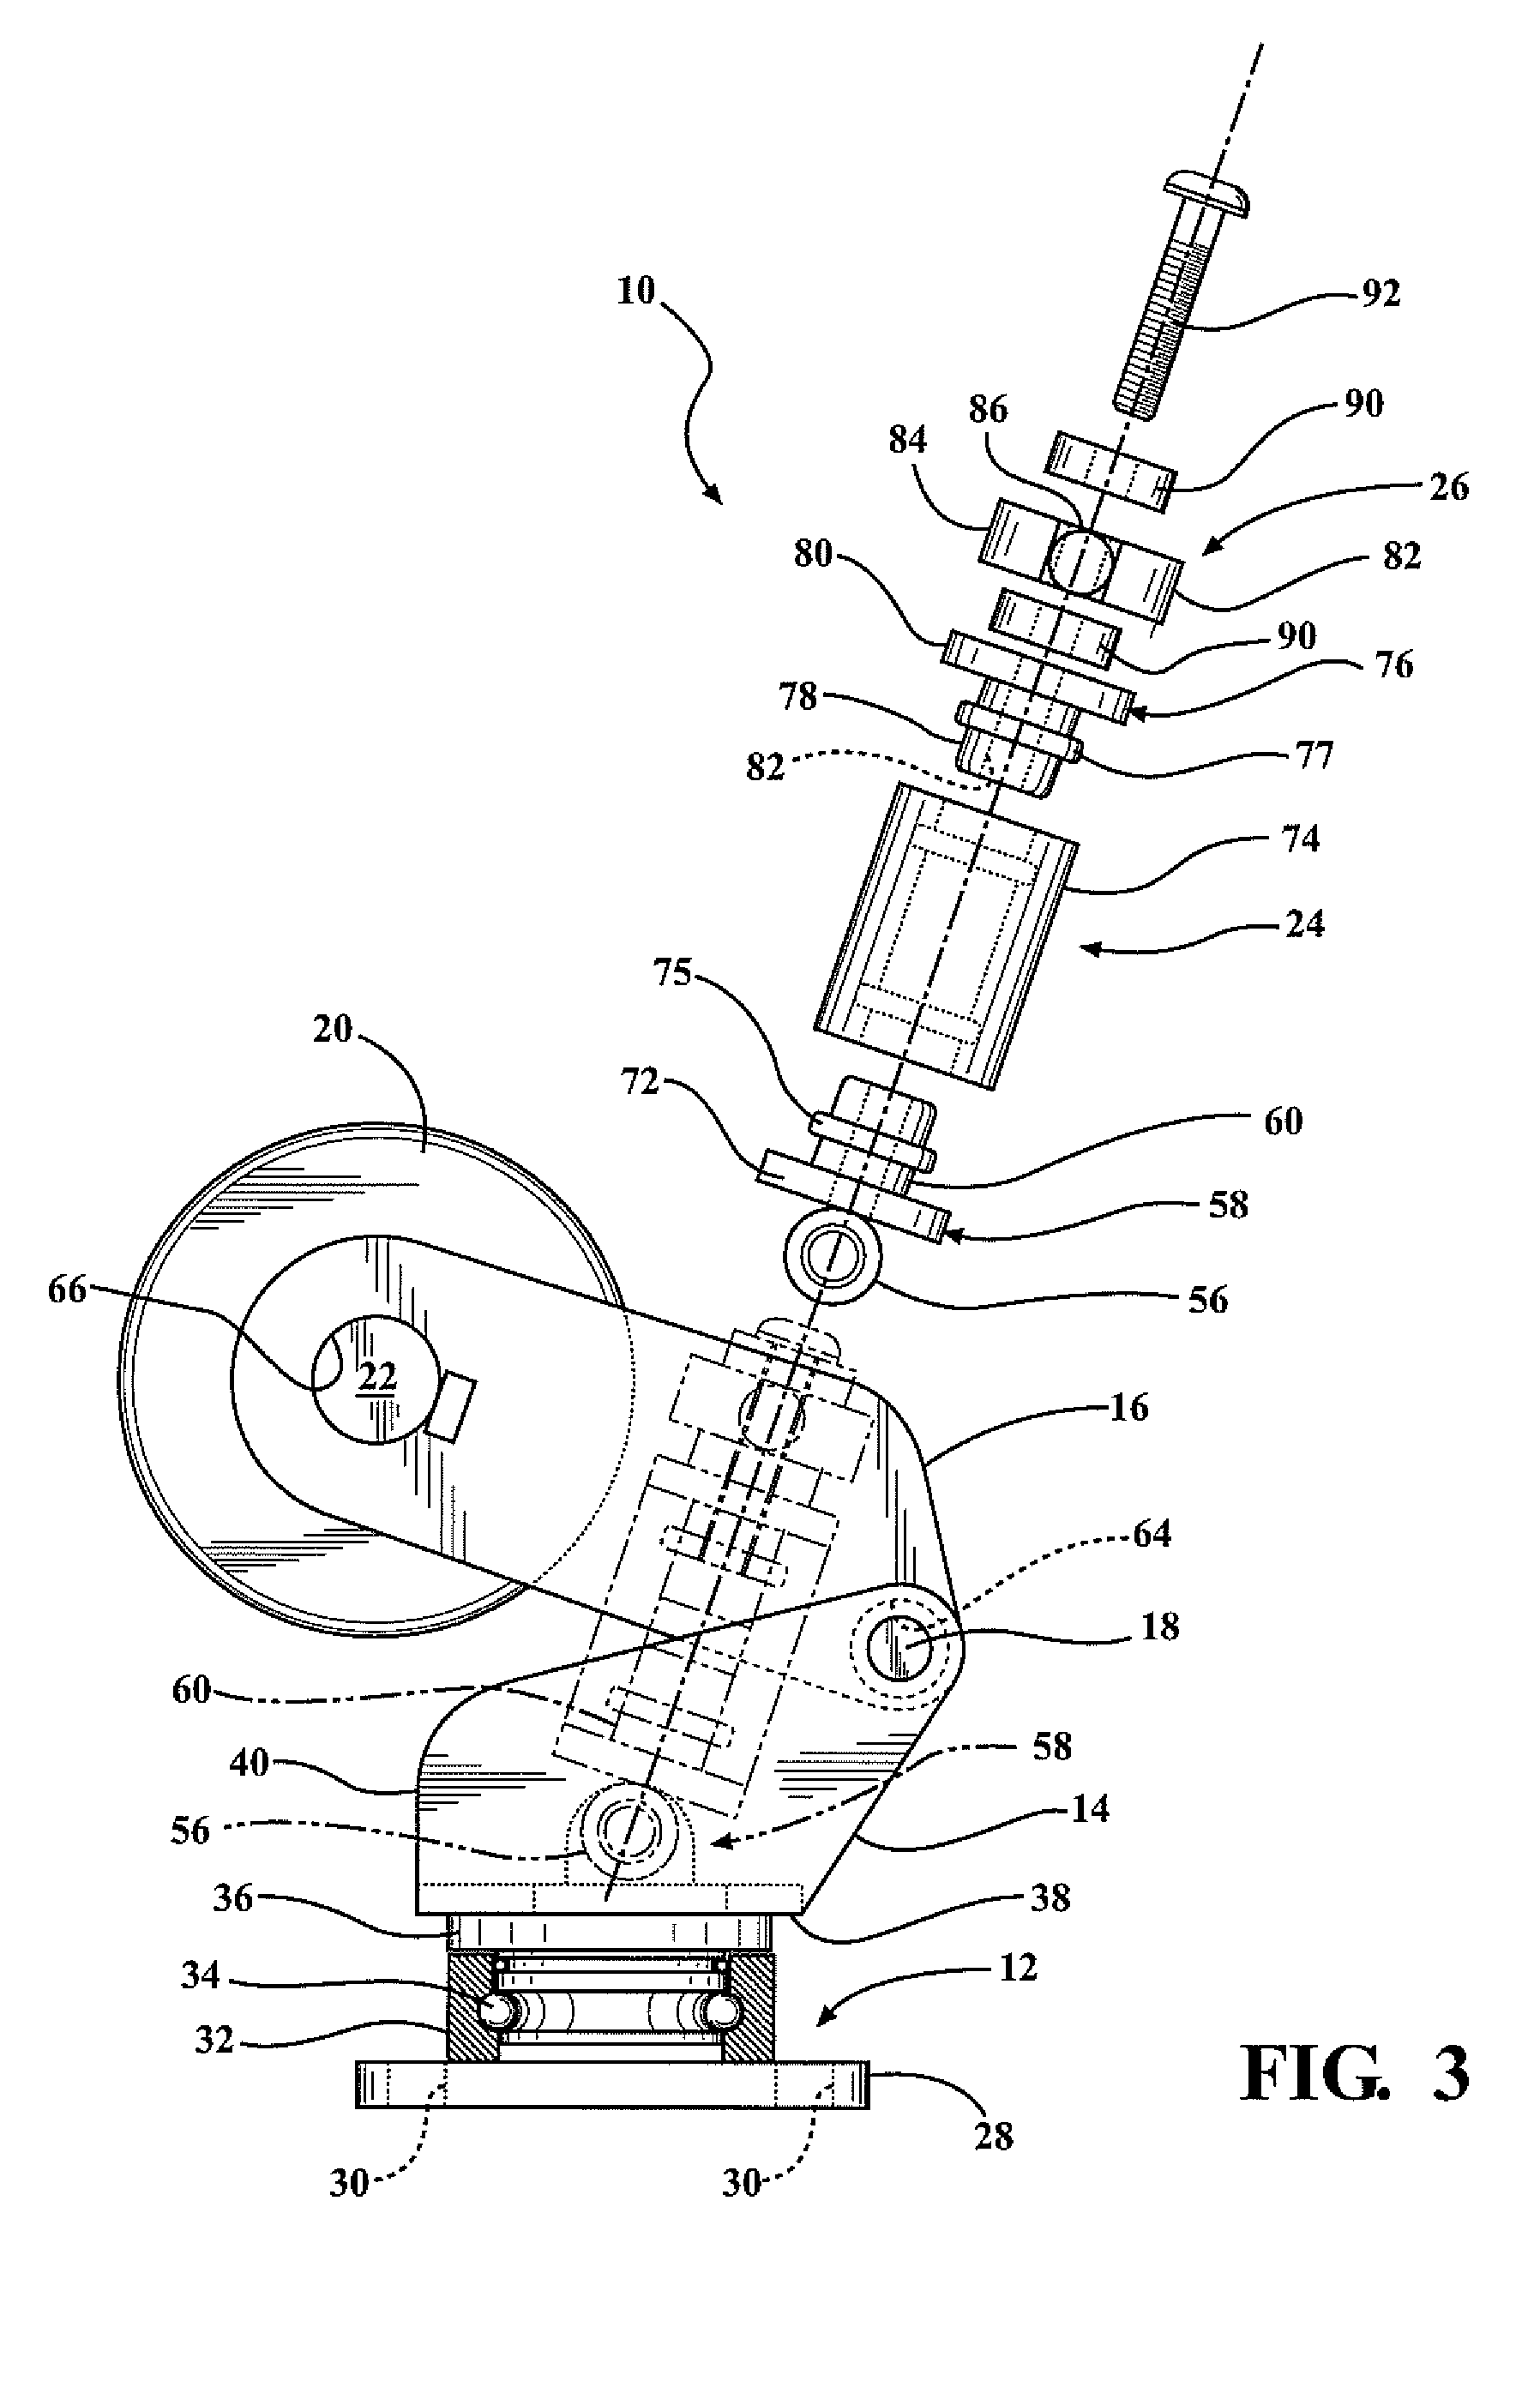 Vertically adjustable caster wheel apparatus